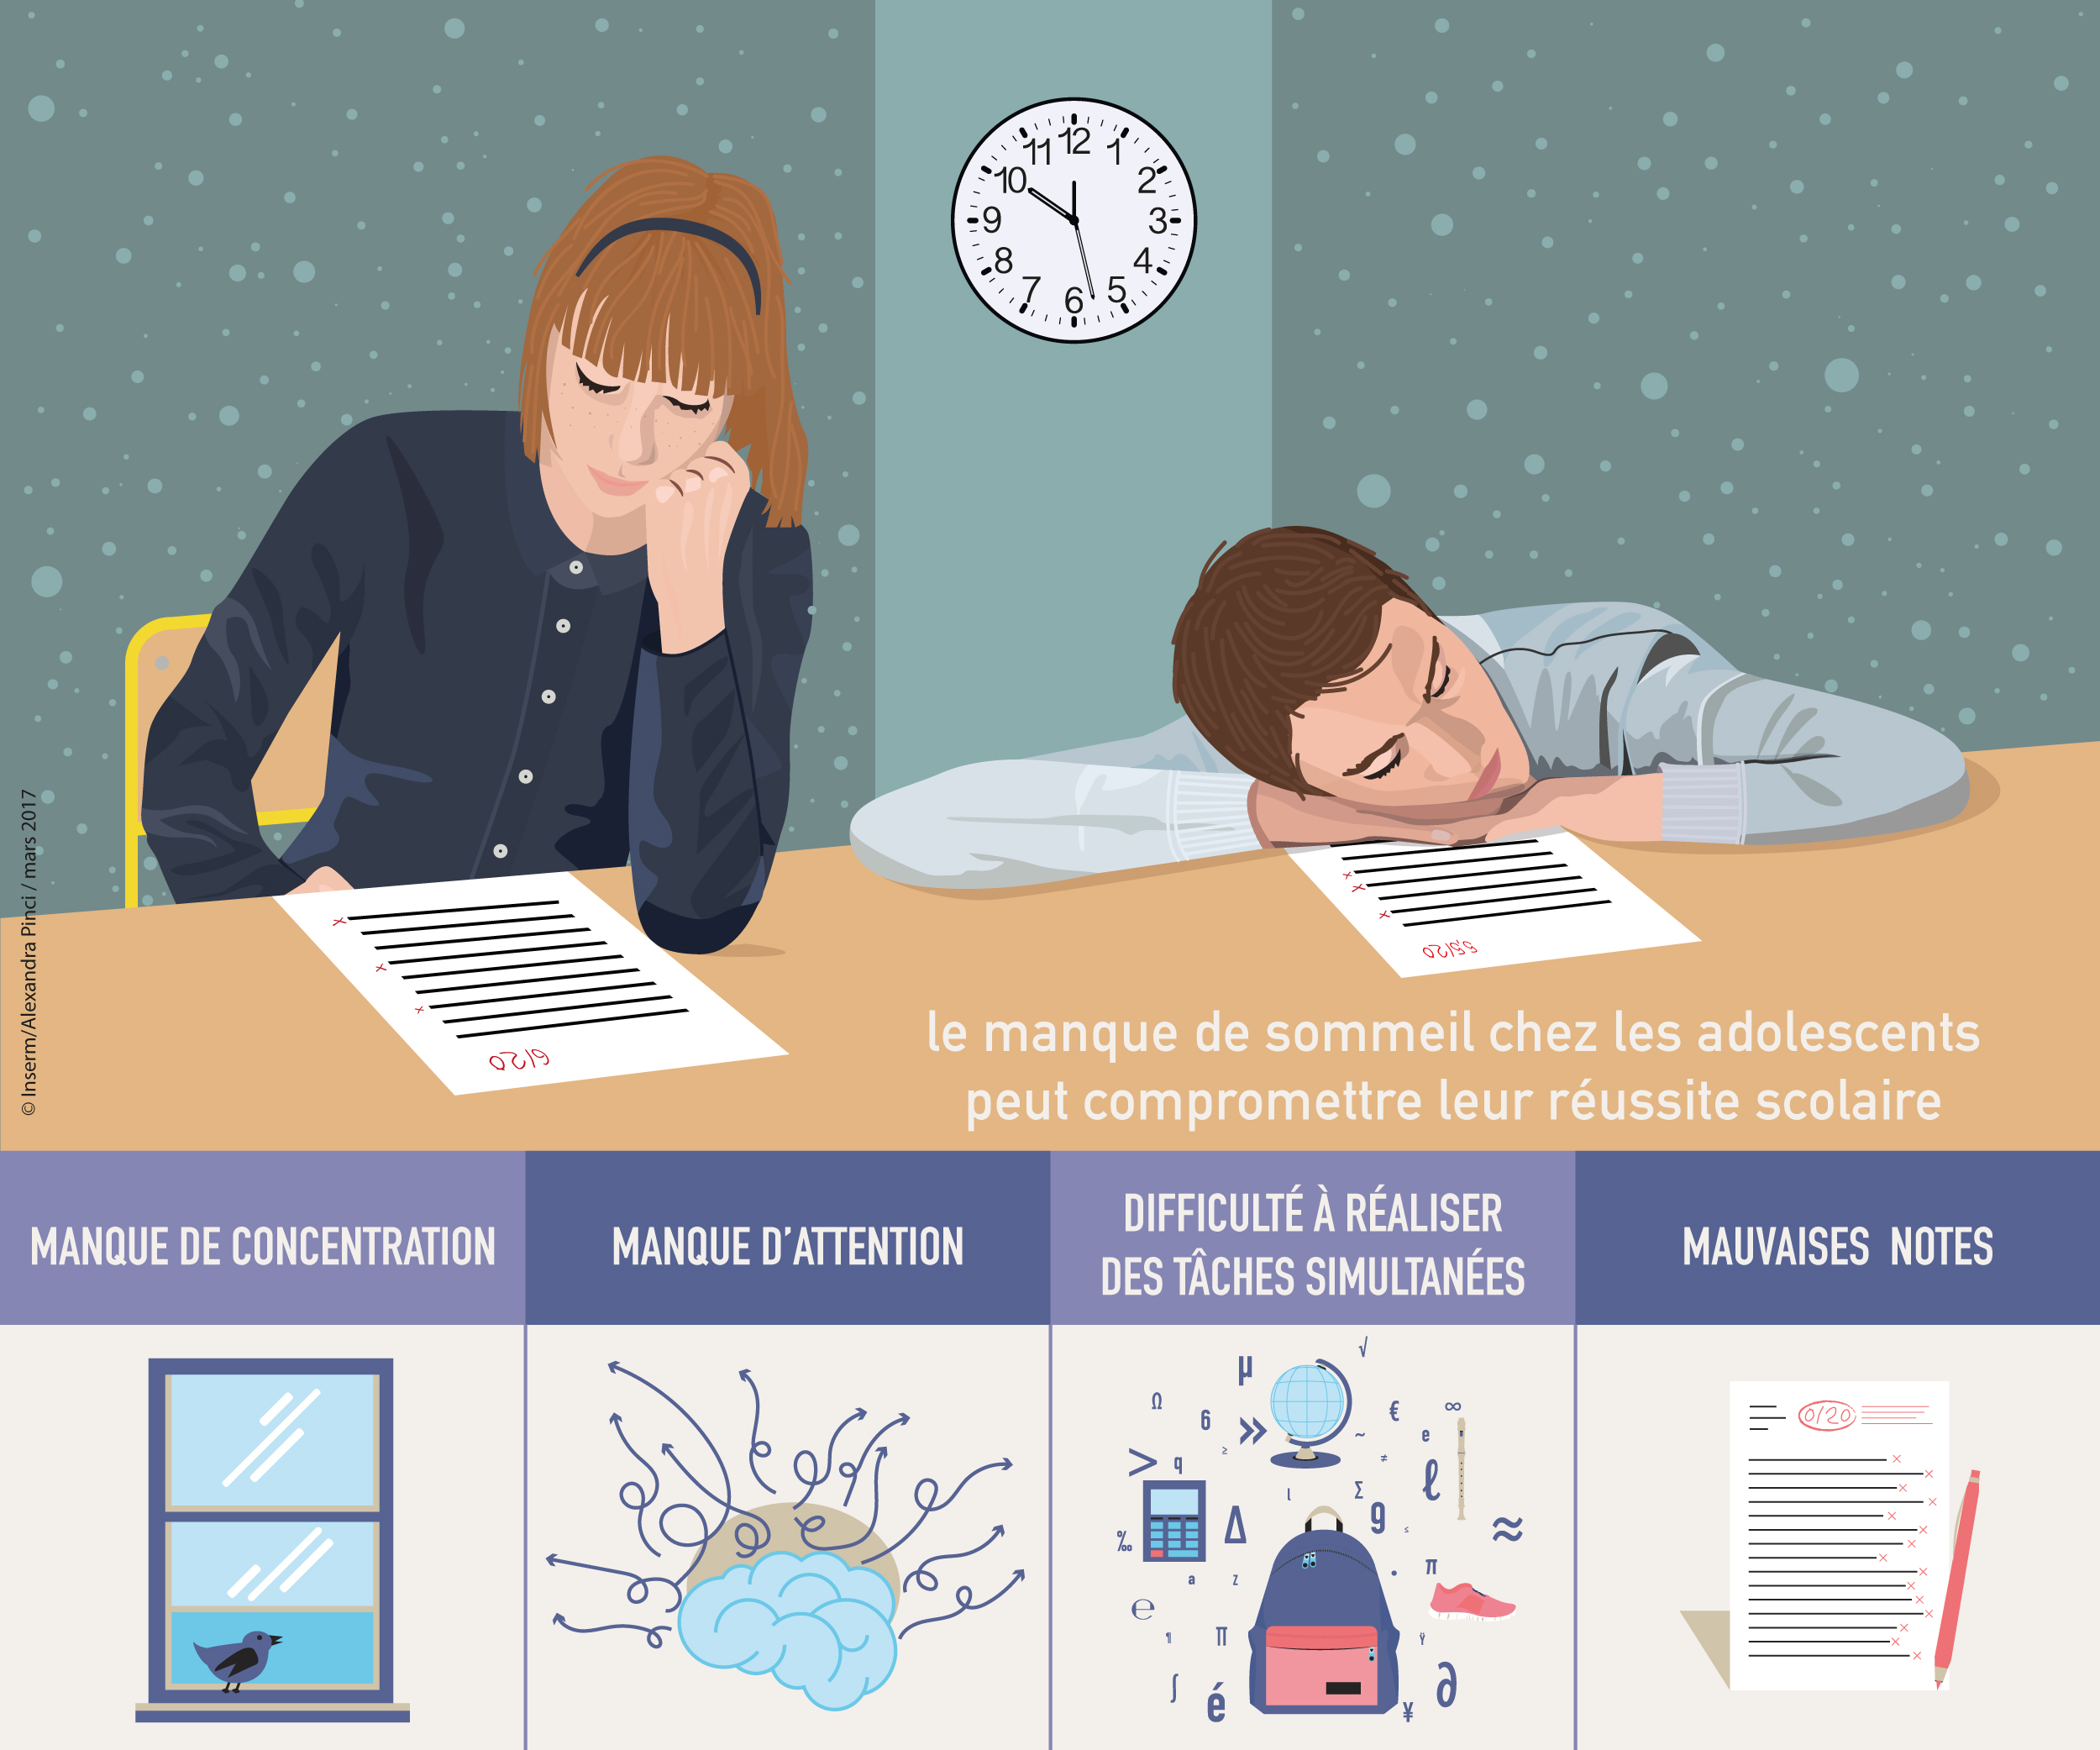 L'importance du sommeil : dormez une heure de plus !, Sorbonne Université